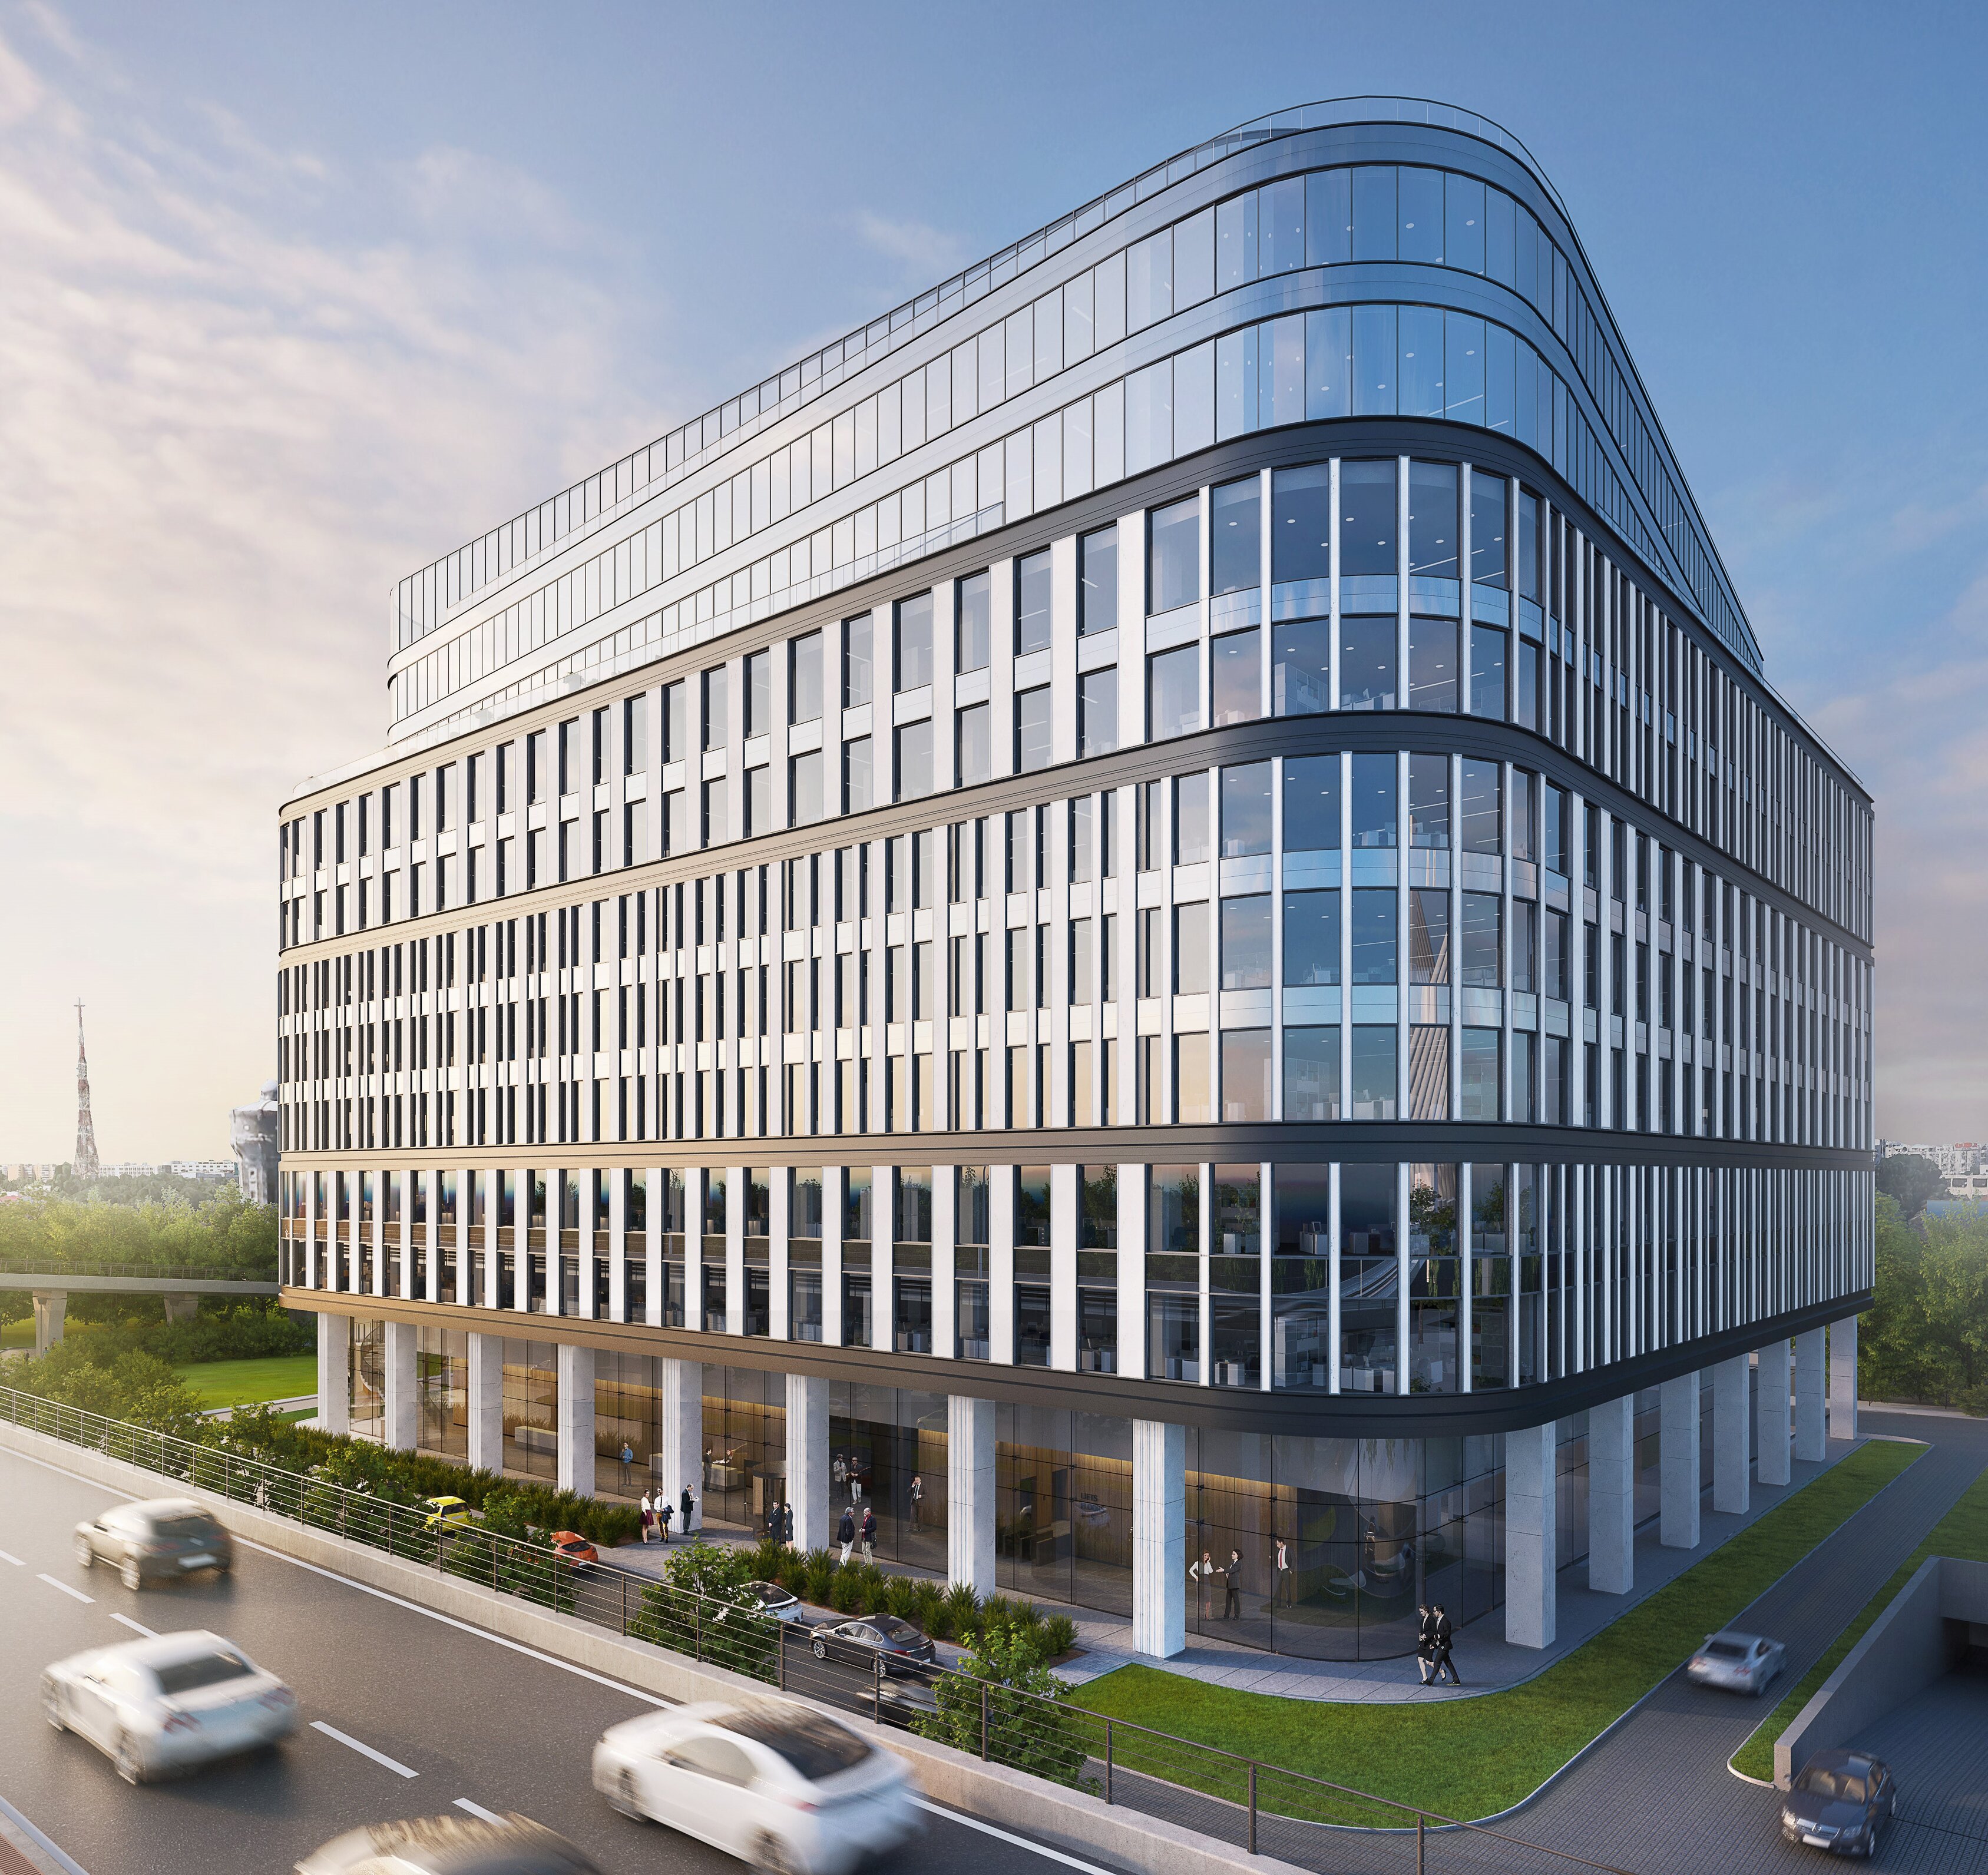 Grupul ceh de investiţii PPF, care deţine Pro TV şi două clădiri de birouri în Bucureşti, a cumpărat un teren în zona de vest a Capitalei şi va construi o clădire de birouri denumită ARC. Investiţia planificată este de 60 mil.euro